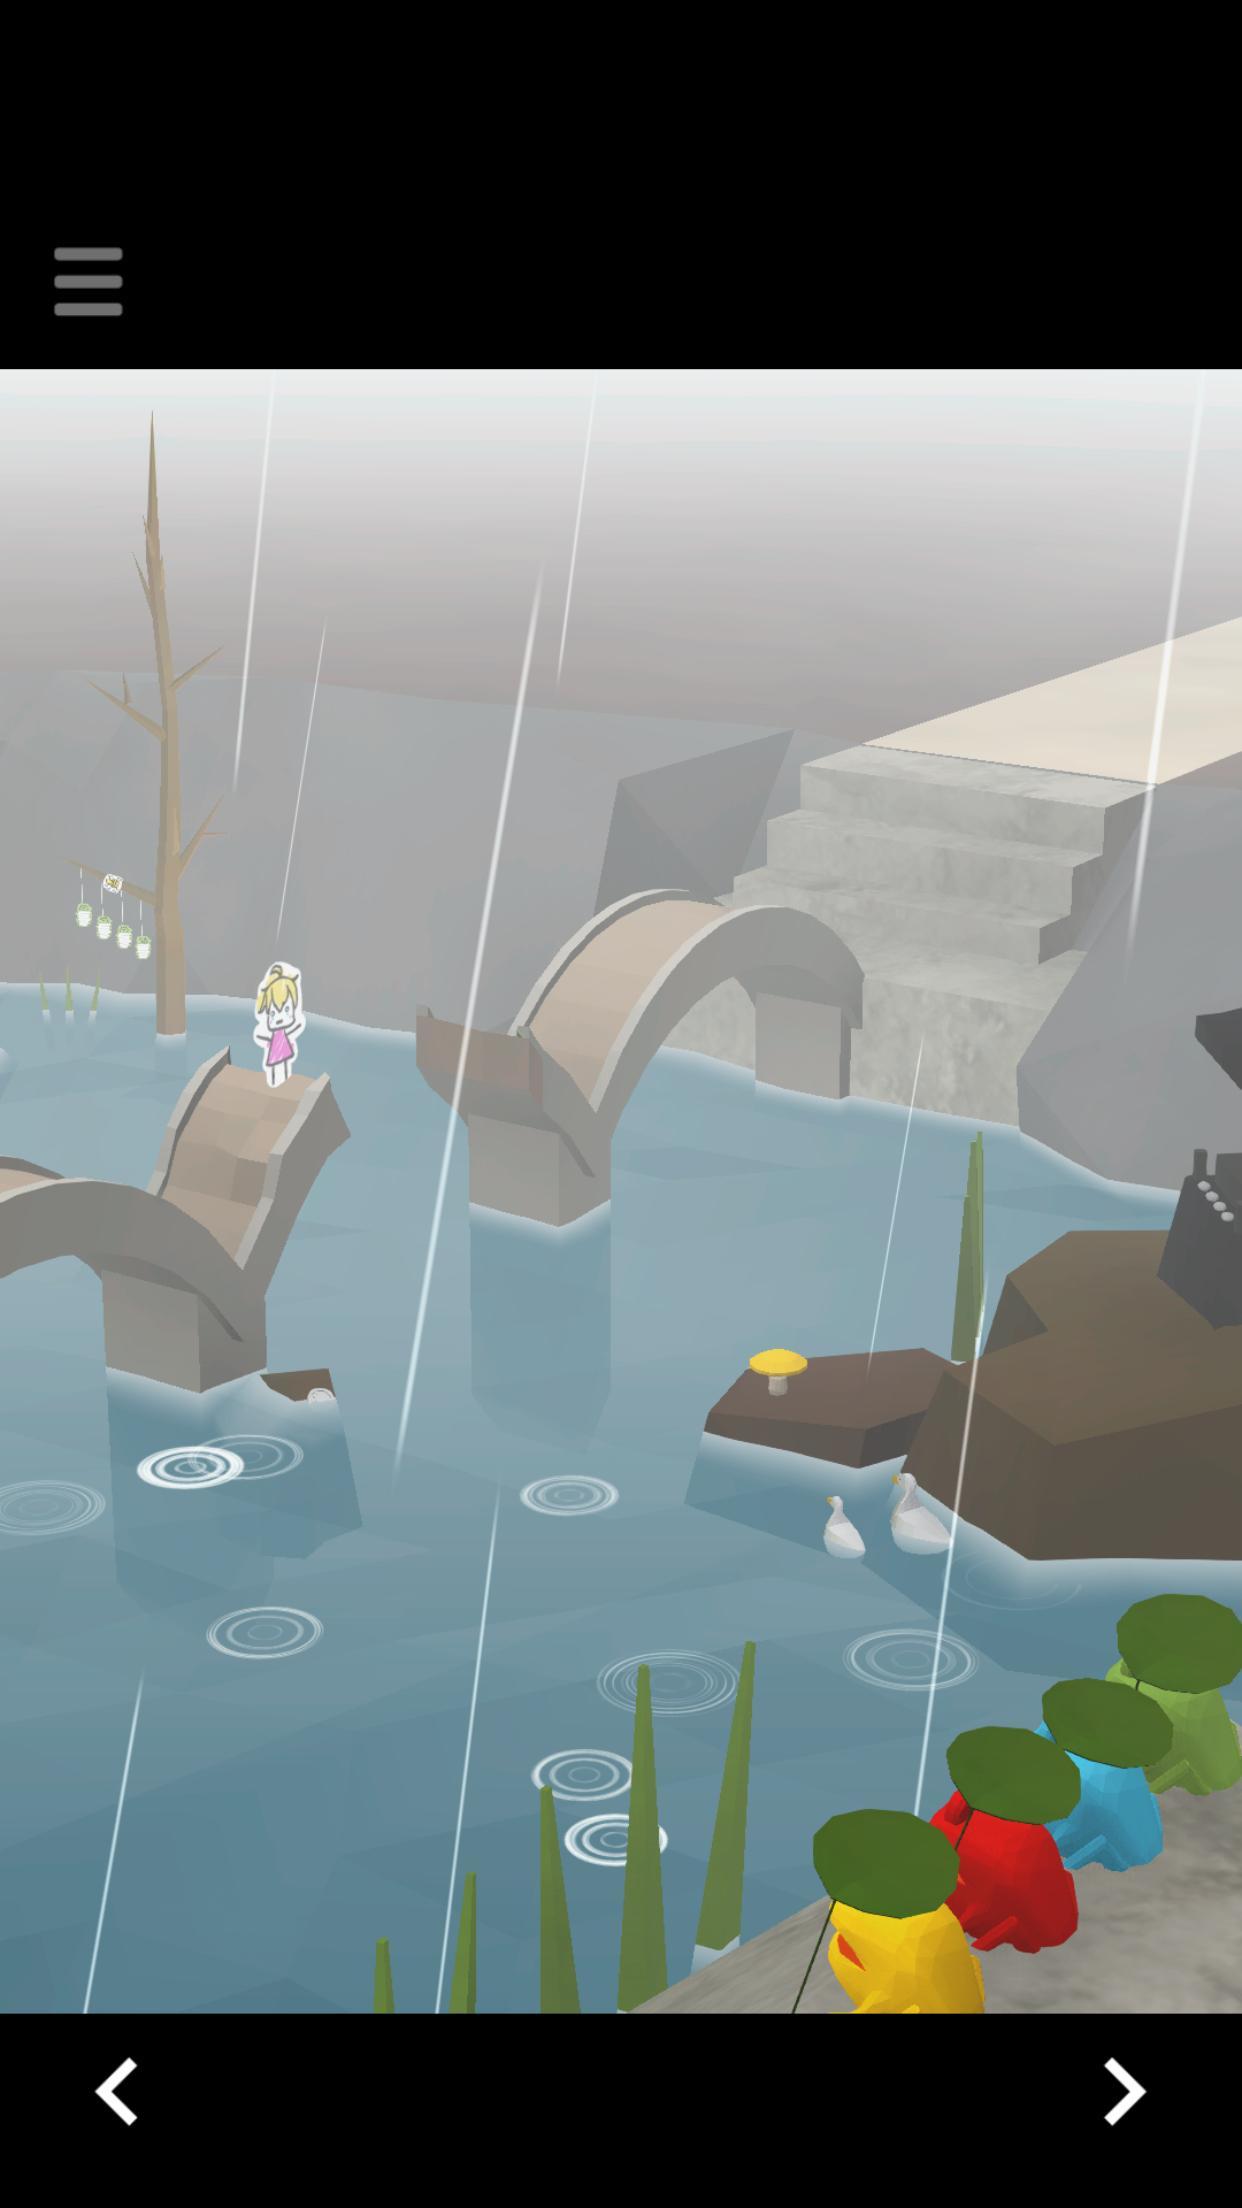 脱出ゲーム -レイニーレイク- カエル佇む雨降り池からの脱出のキャプチャ